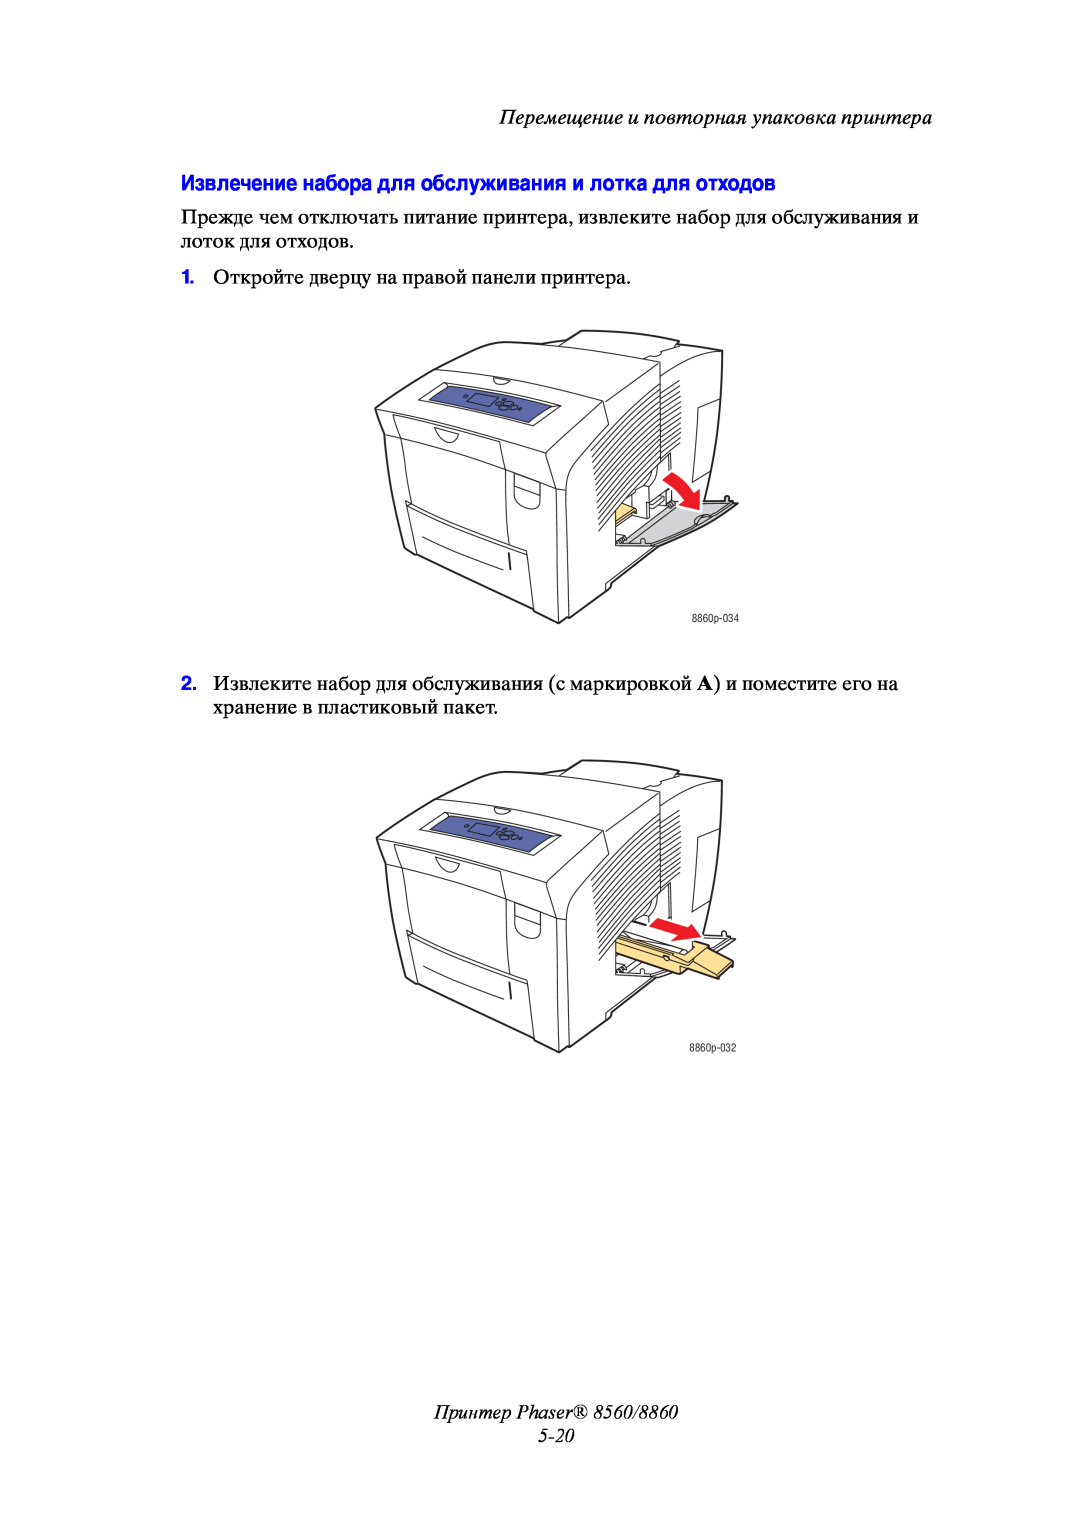 Xerox manual Извлечение набора для обслуживания и лотка для отходов, Принтер Phaser 8560/8860 5-20 